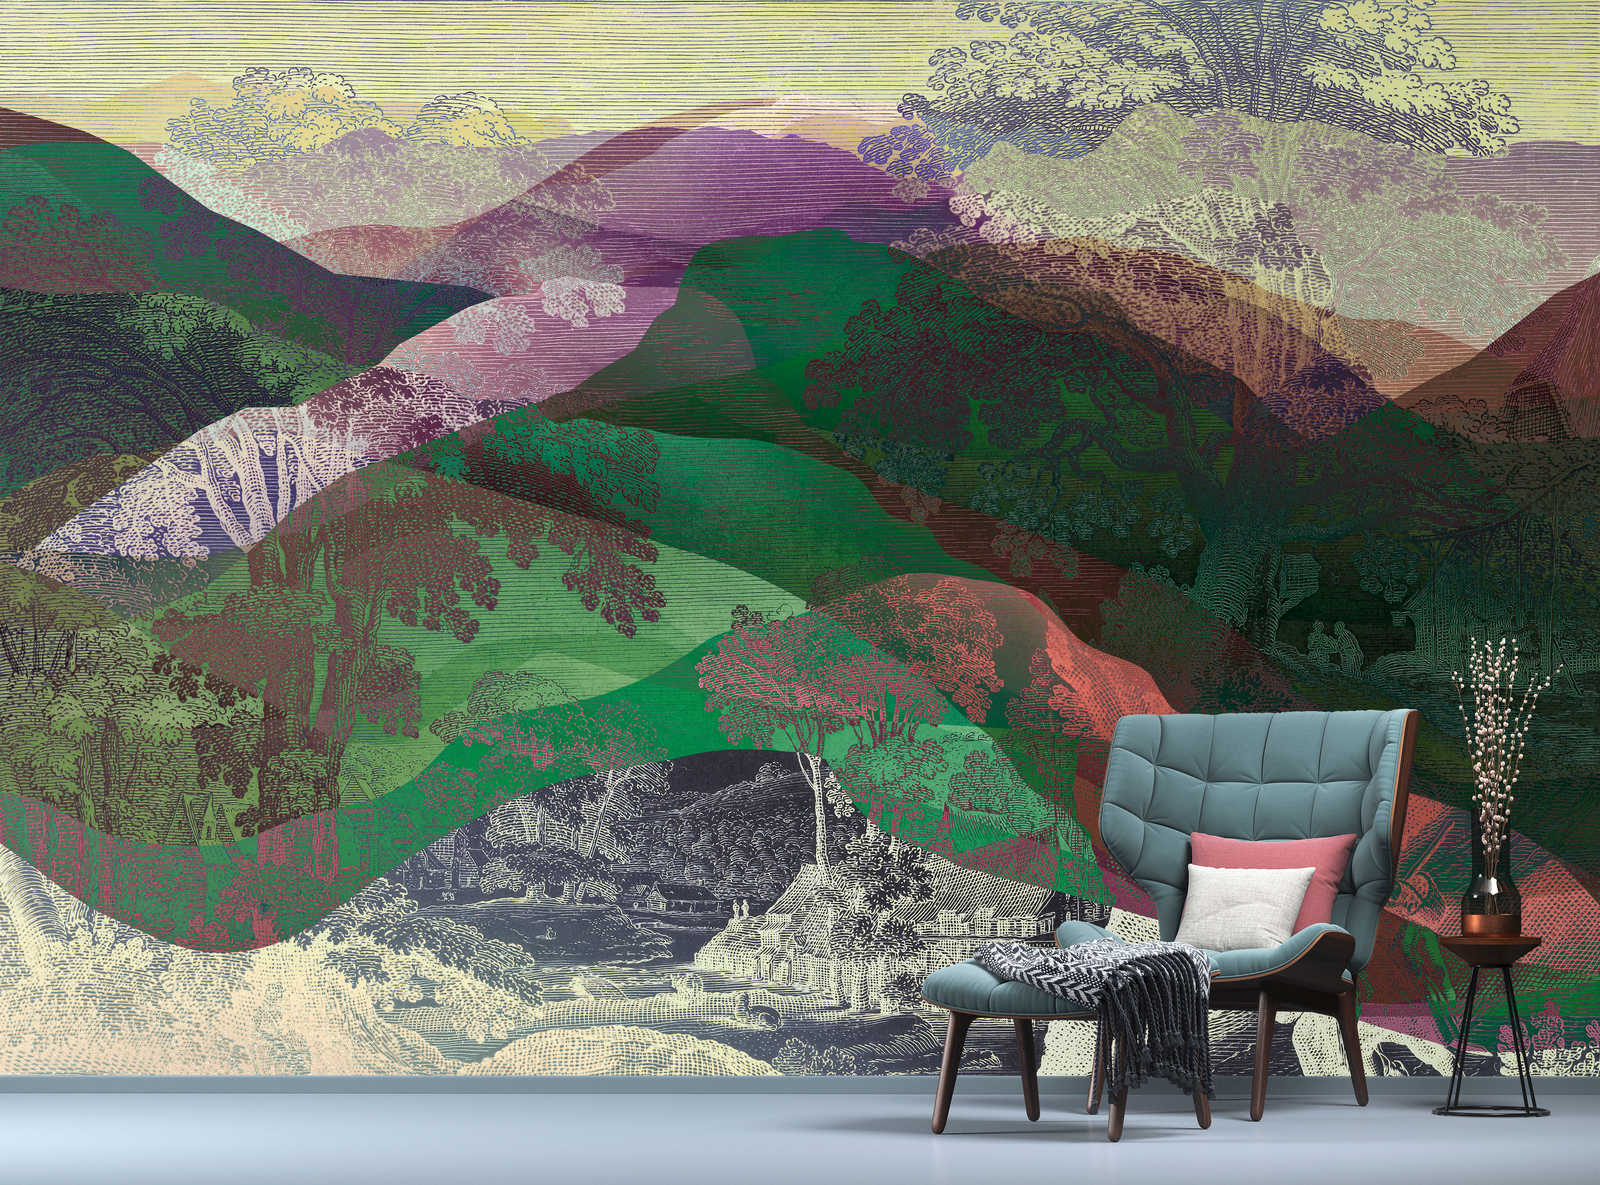             Hidden Valley 1 - Mural de pared Vintage meets Modern Mountain Landscape
        